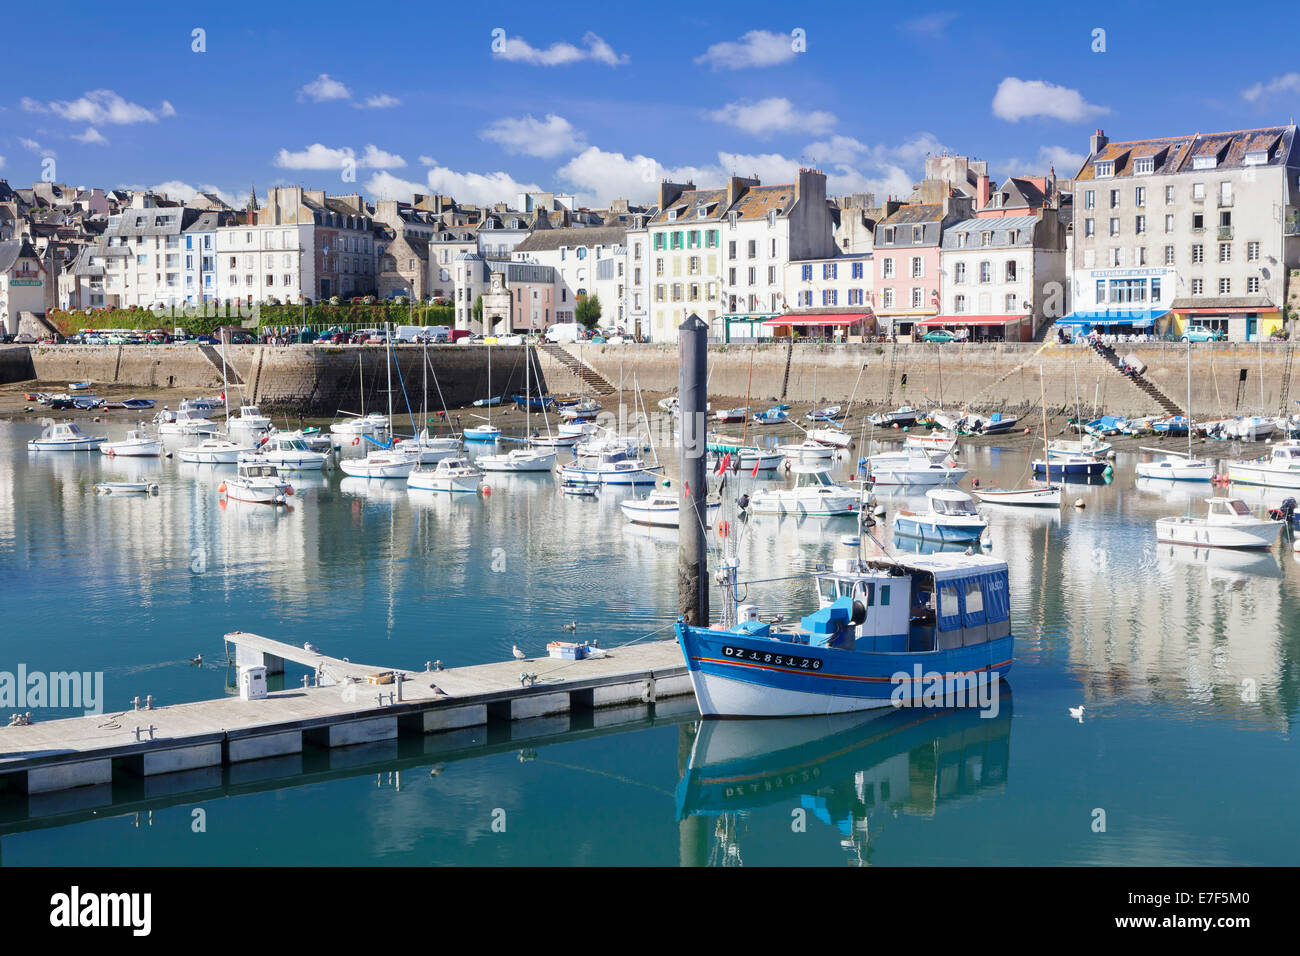 Port of Douarnenez, Département Finistère, Brittany, France Stock Photo